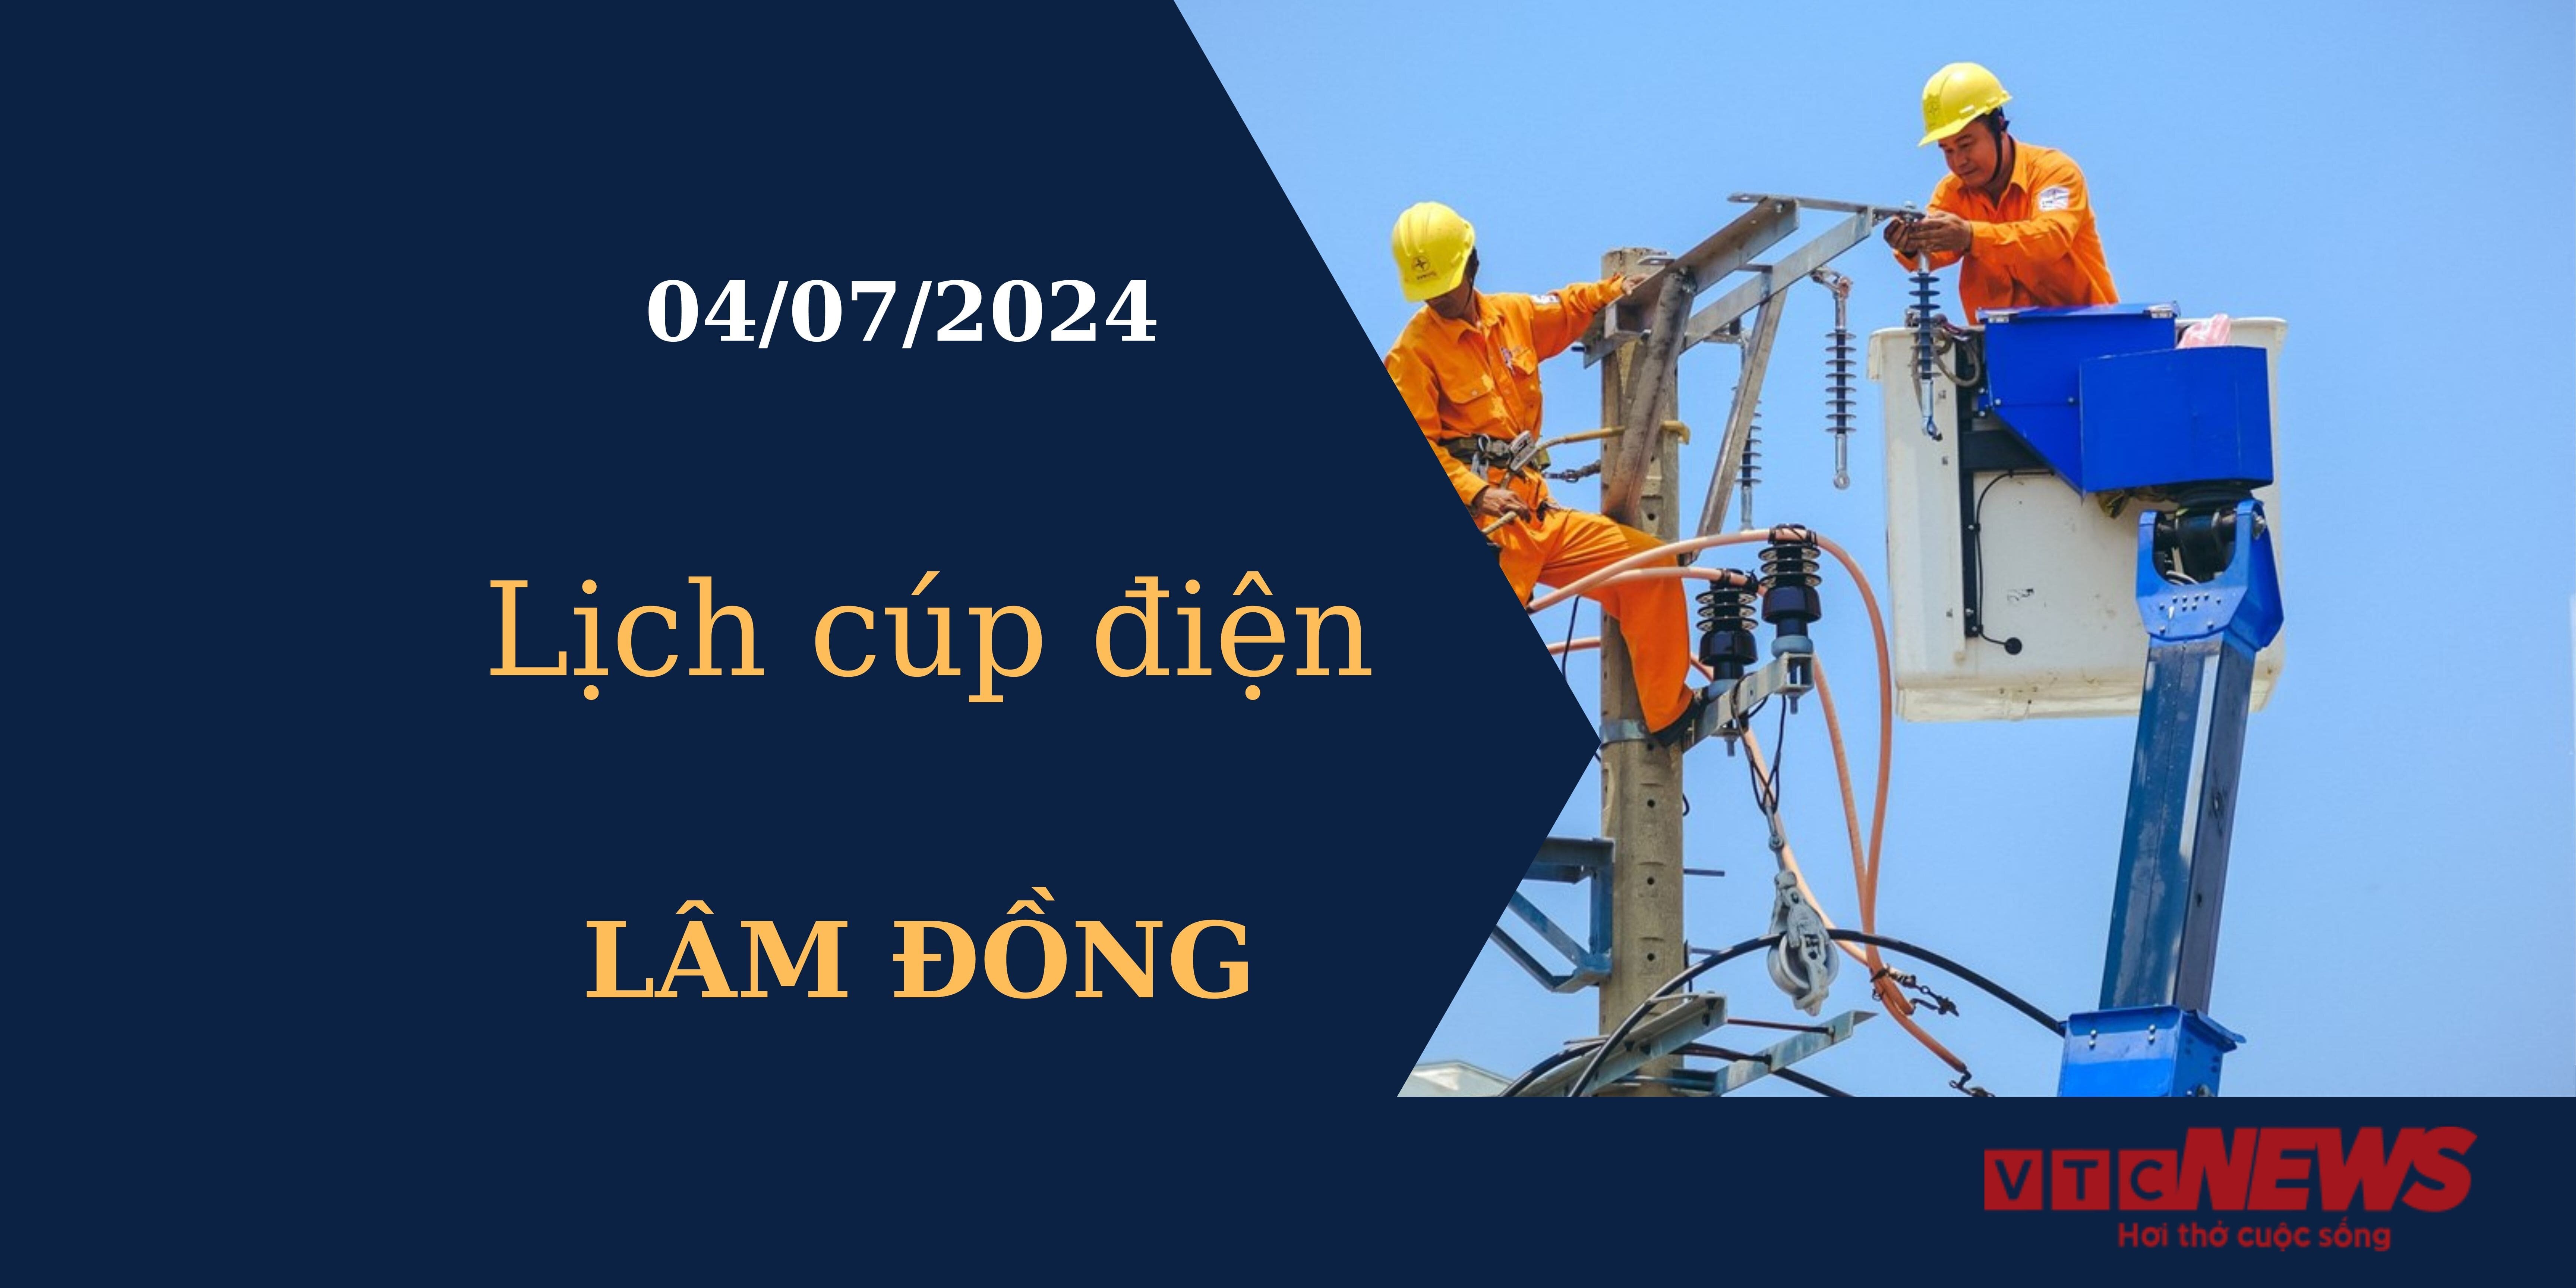 Lịch cúp điện hôm nay tại Lâm Đồng ngày 04/07/2024